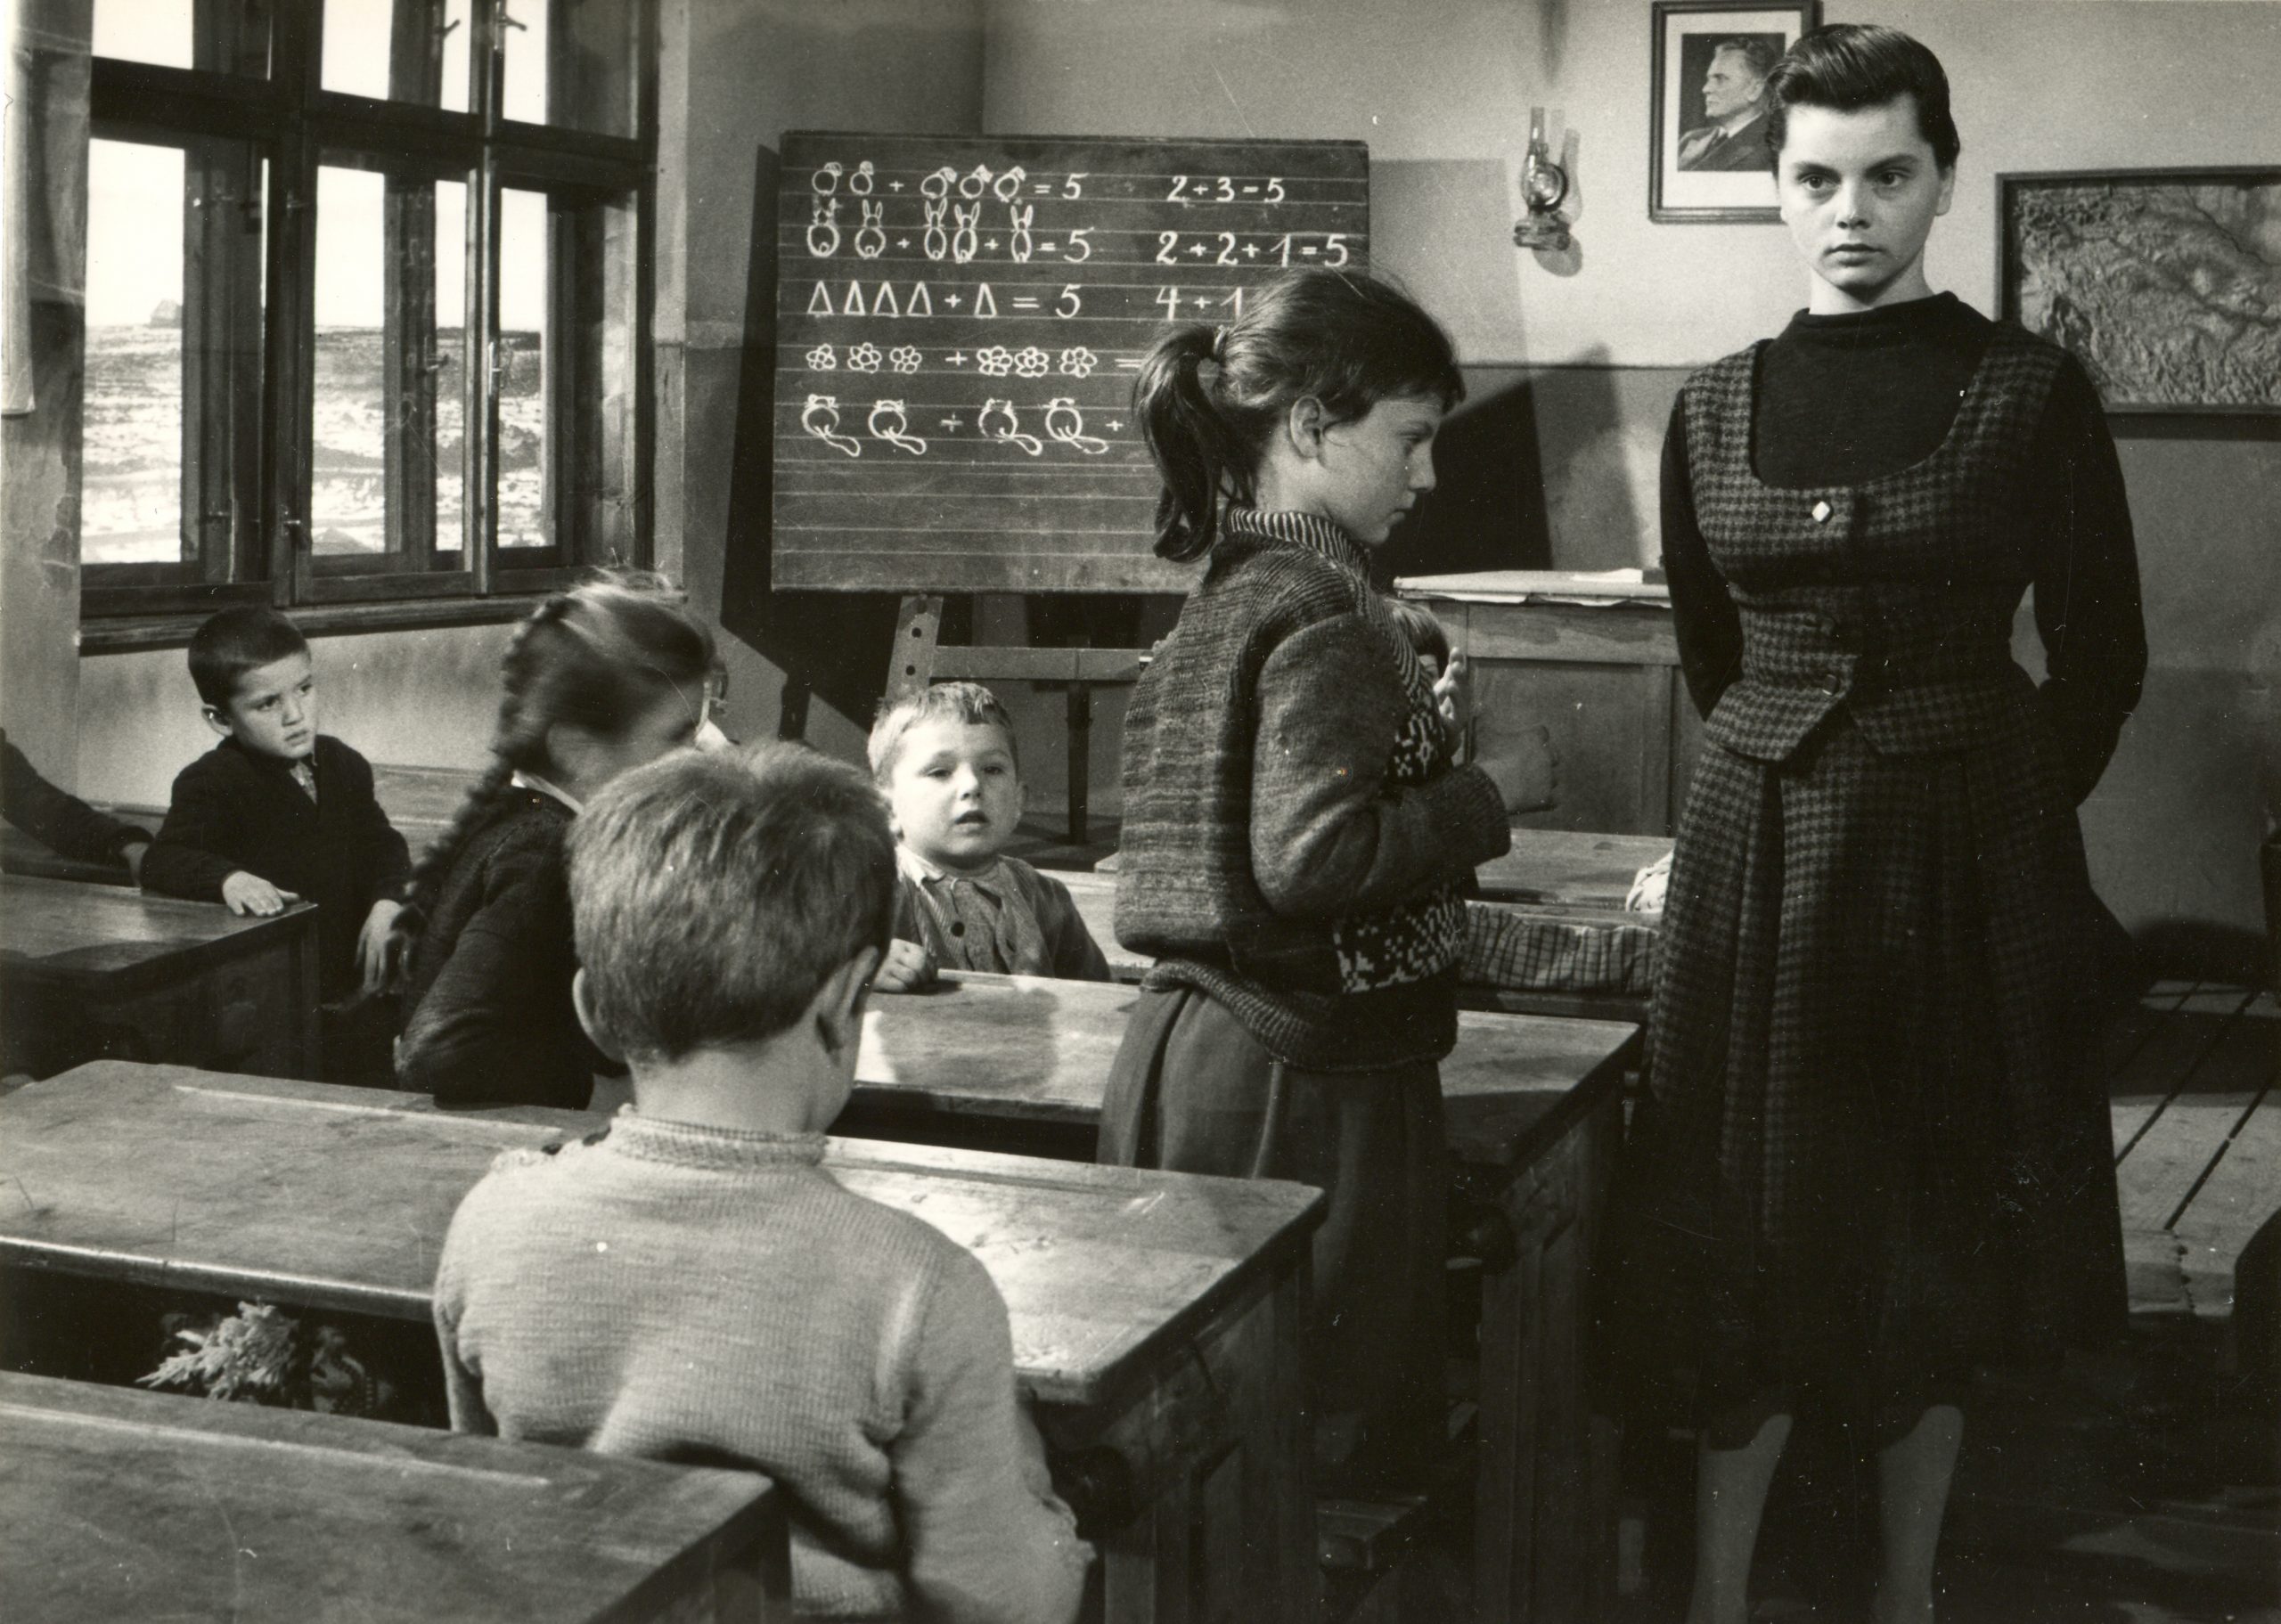 Prizor iz filma za djecu "Izgubljena olovka" iz 1960. godine